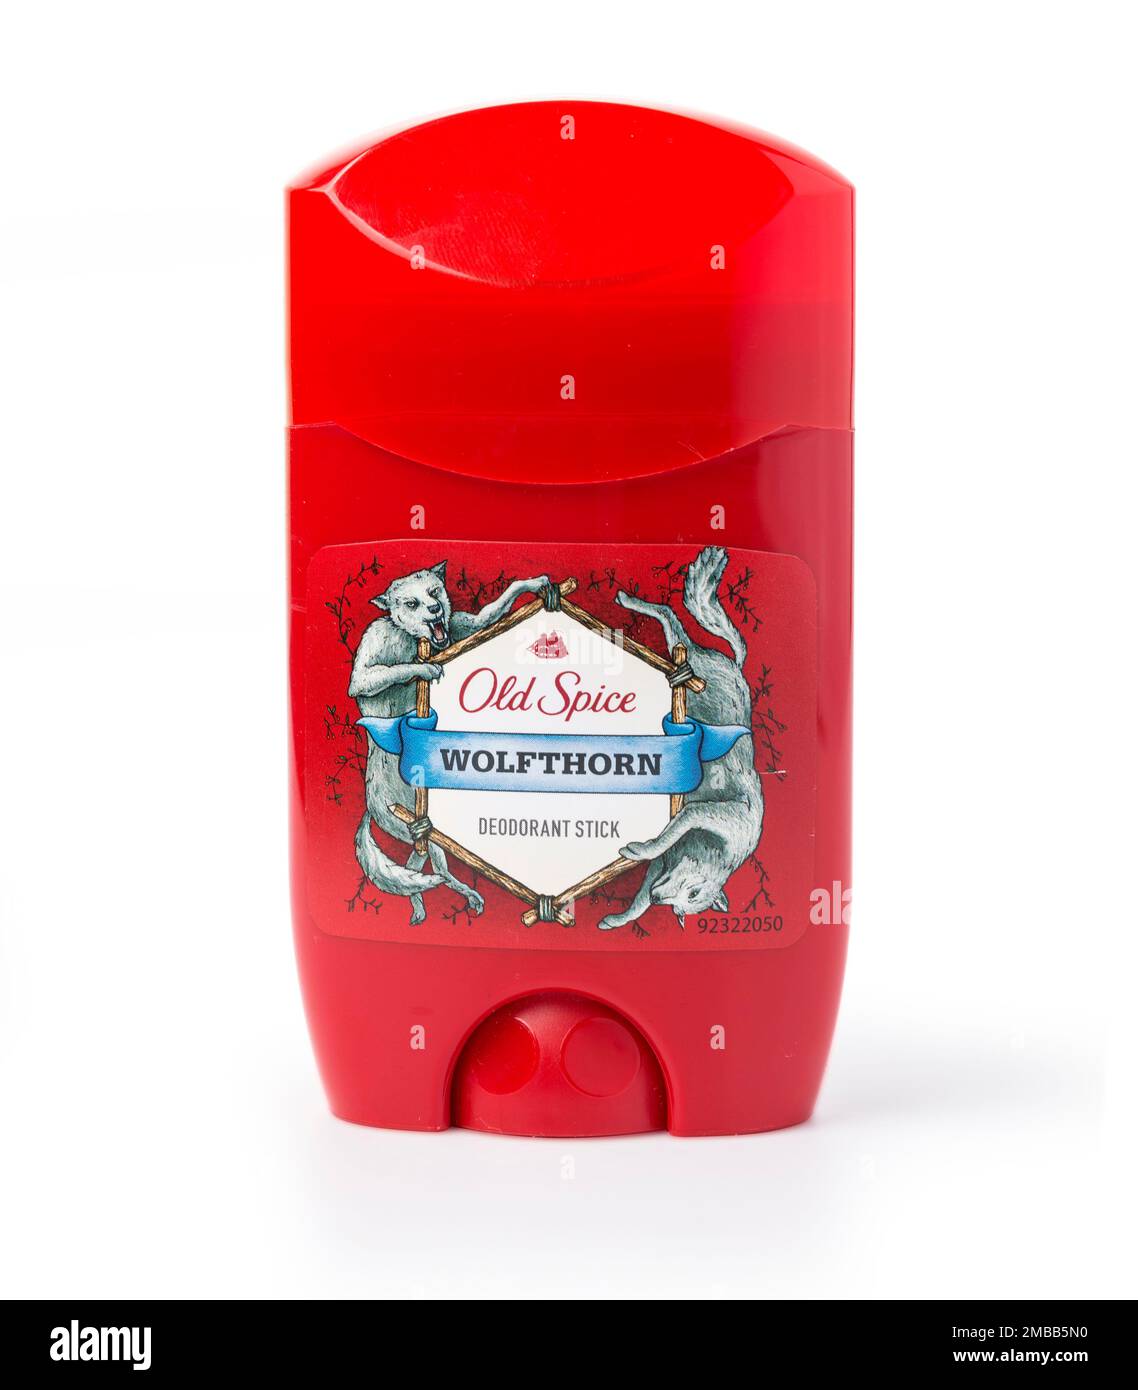 Chisinau, Moldova 16 décembre 2016 Un contenant de déodorant Old Spice. Old Spice est distribué par Proctor et Gamble de Cincinnati, Ohio. Banque D'Images